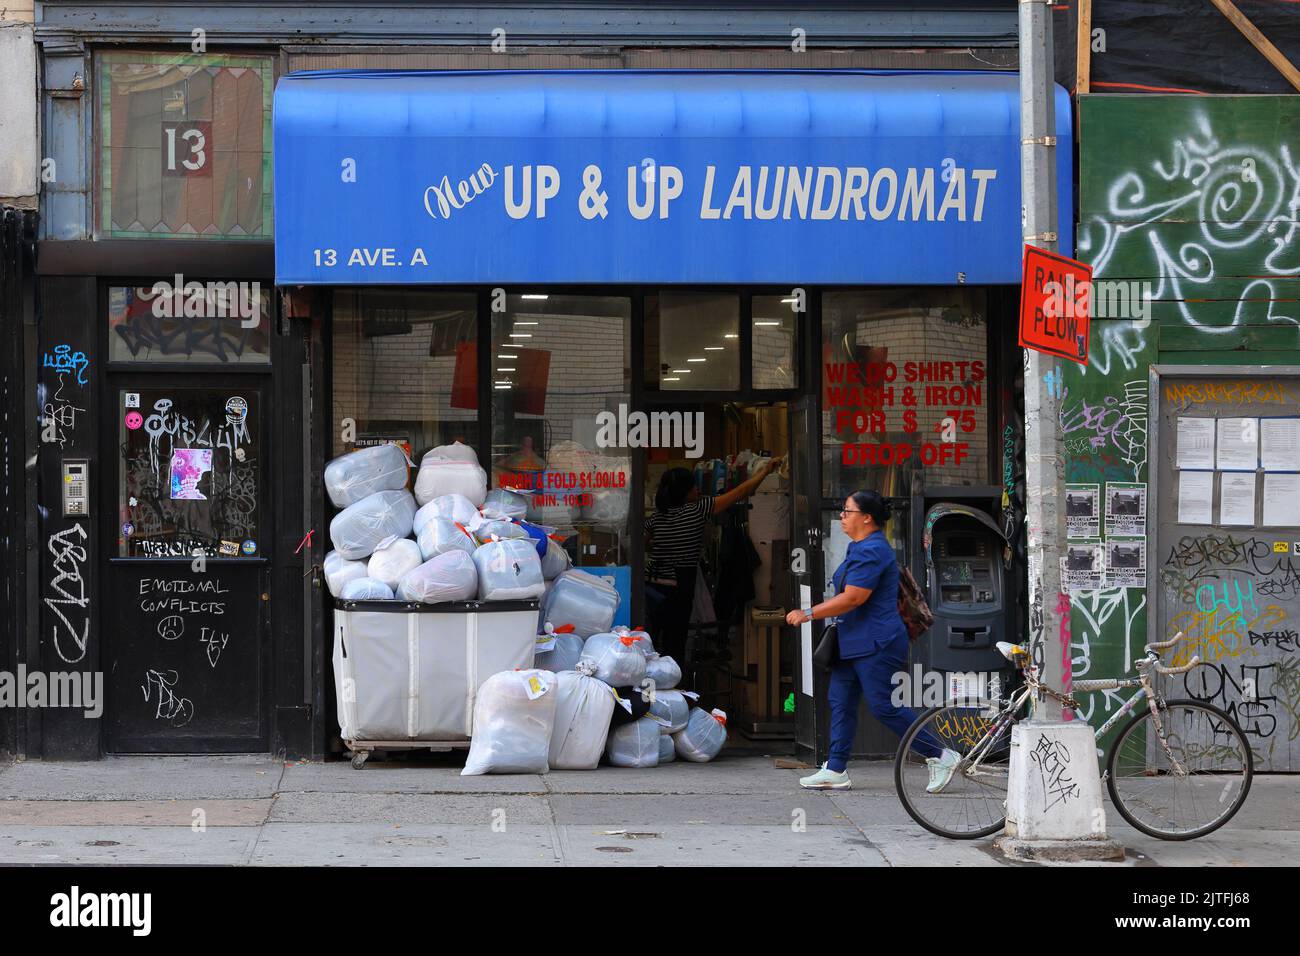 Up & Up Laundromat, 13 Avenue A, New York, NYC Foto von einem Waschsalon in Manhattans East Village Nachbarschaft. Stockfoto